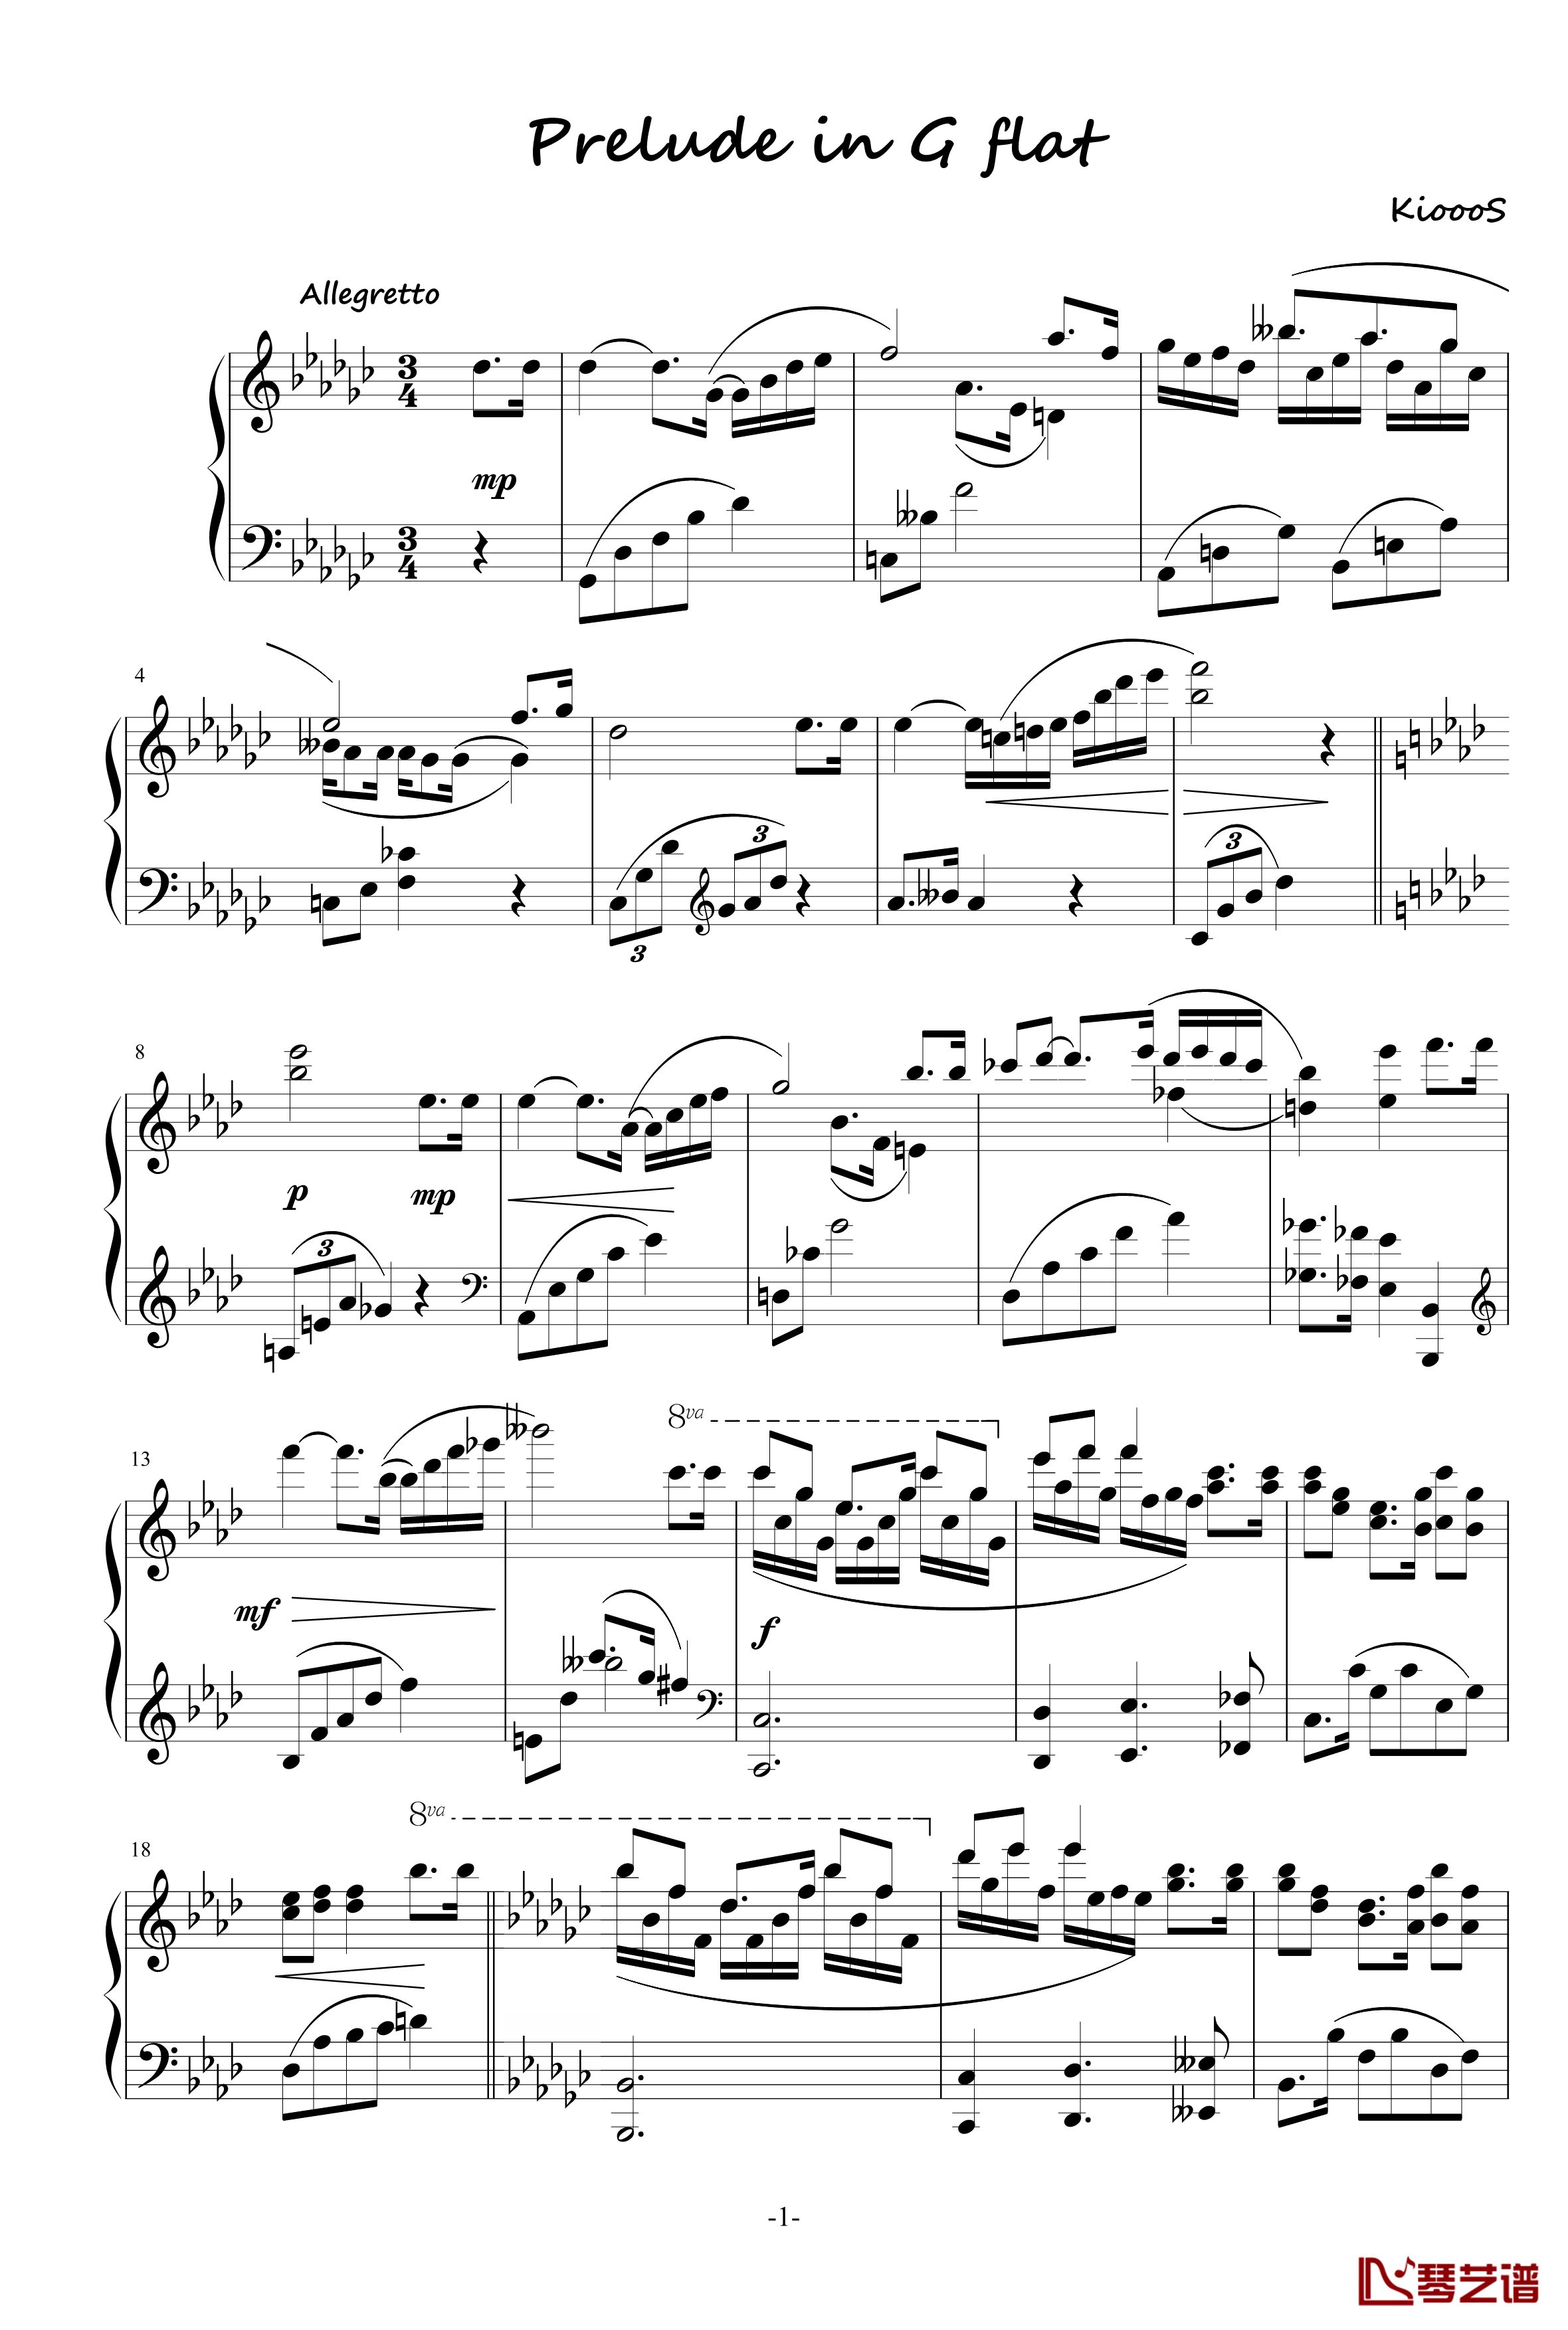 5.8分之曲钢琴谱-KioooS1